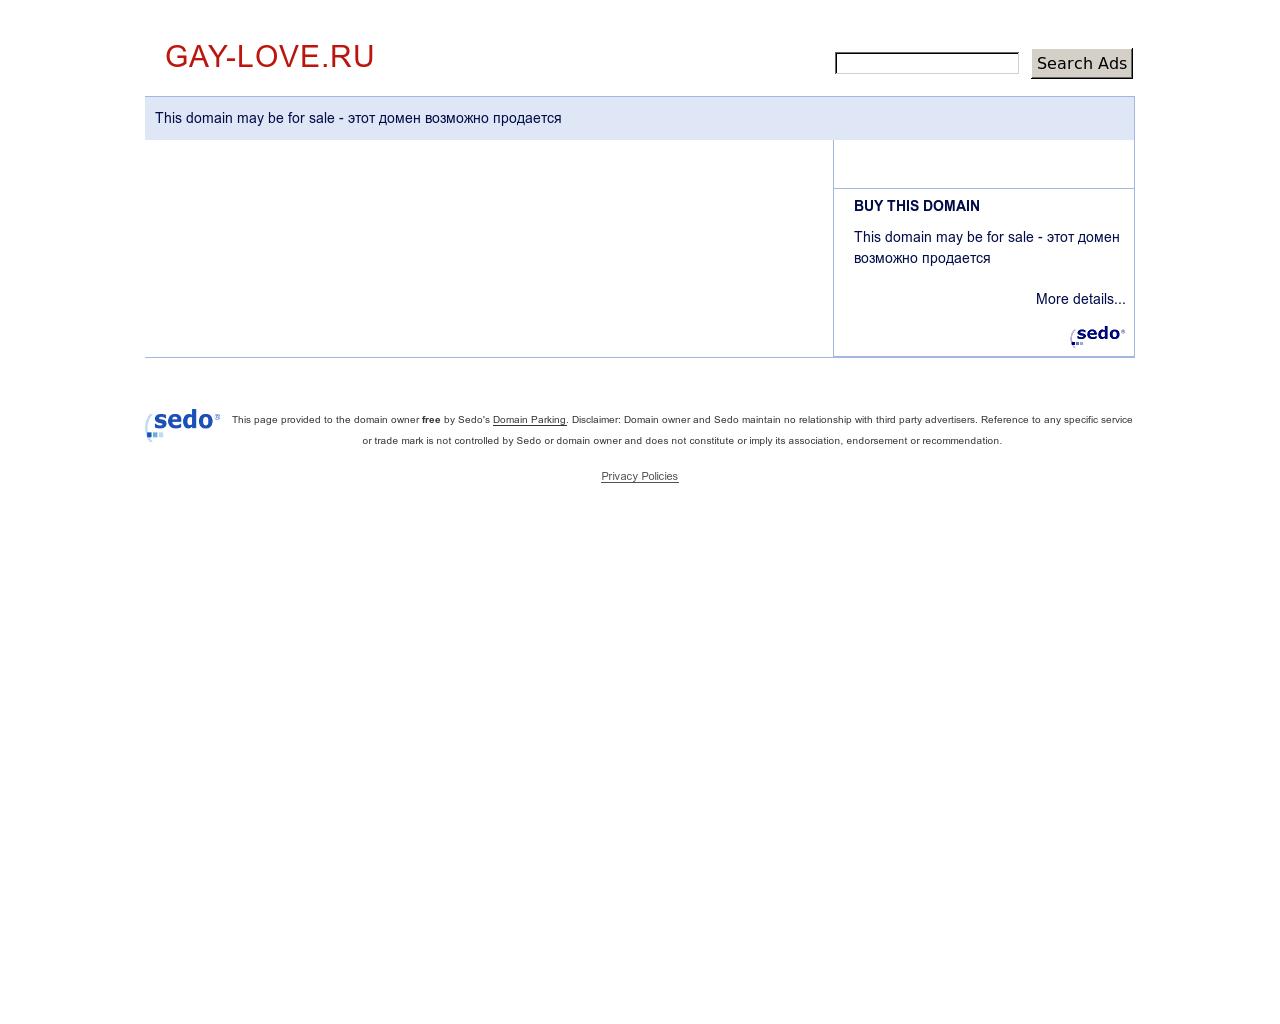 Изображение сайта gay-love.ru в разрешении 1280x1024